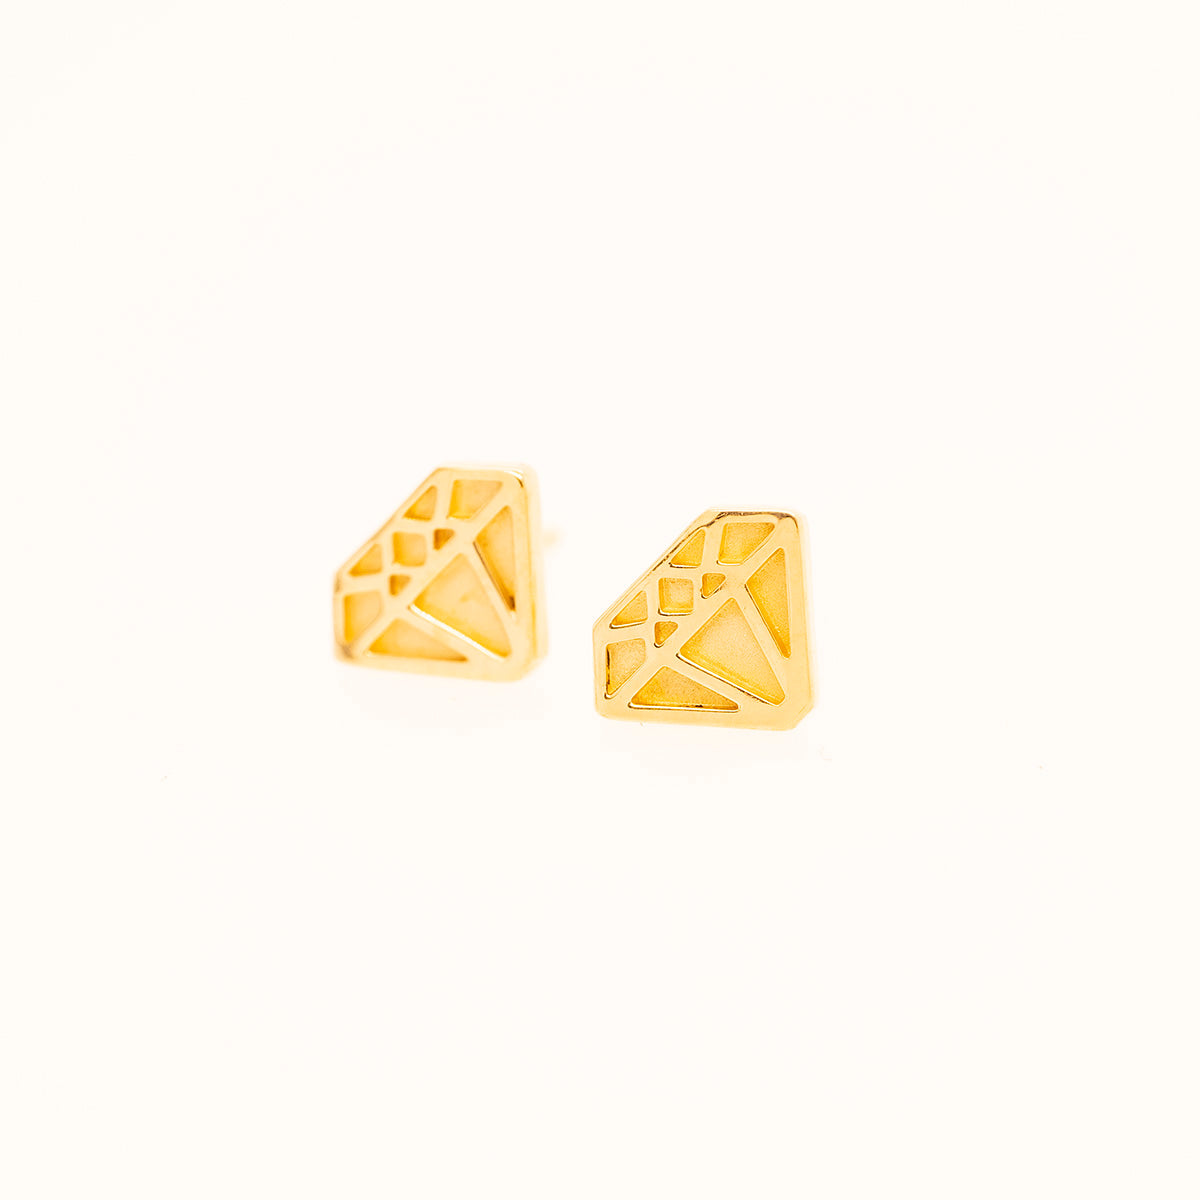 Little Diamond Earrings